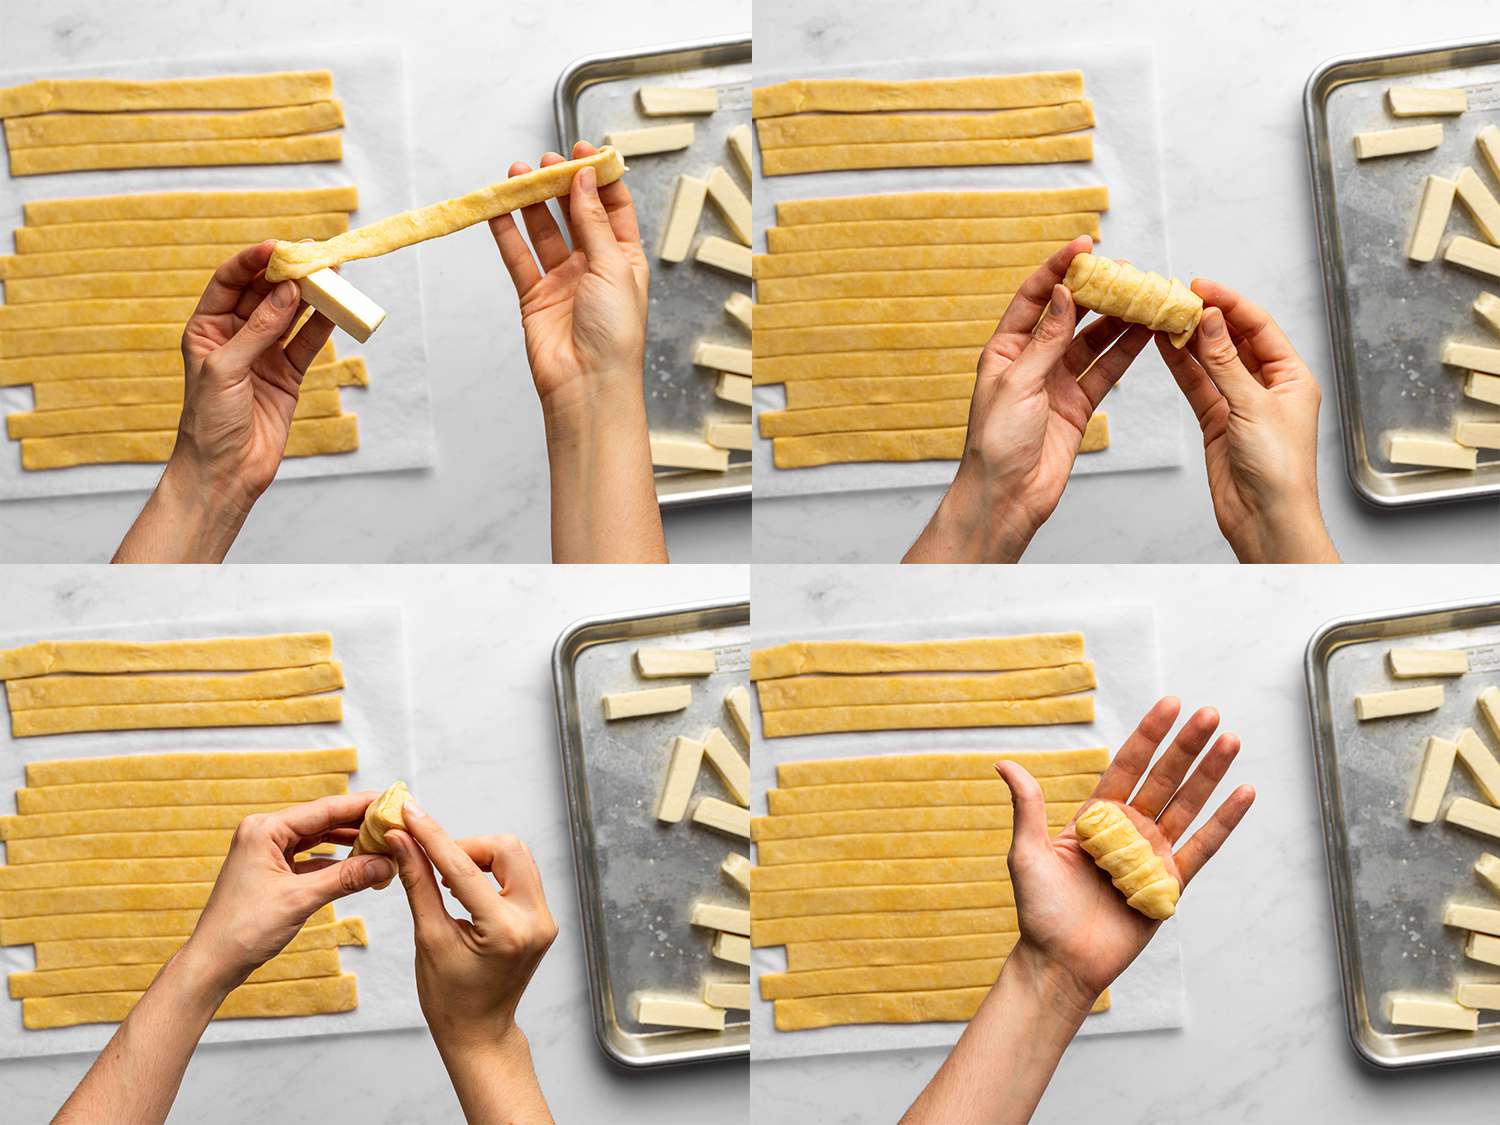 一幅四幅图片的拼贴画，展示了一块奶酪被包裹在一条切好的面团中。